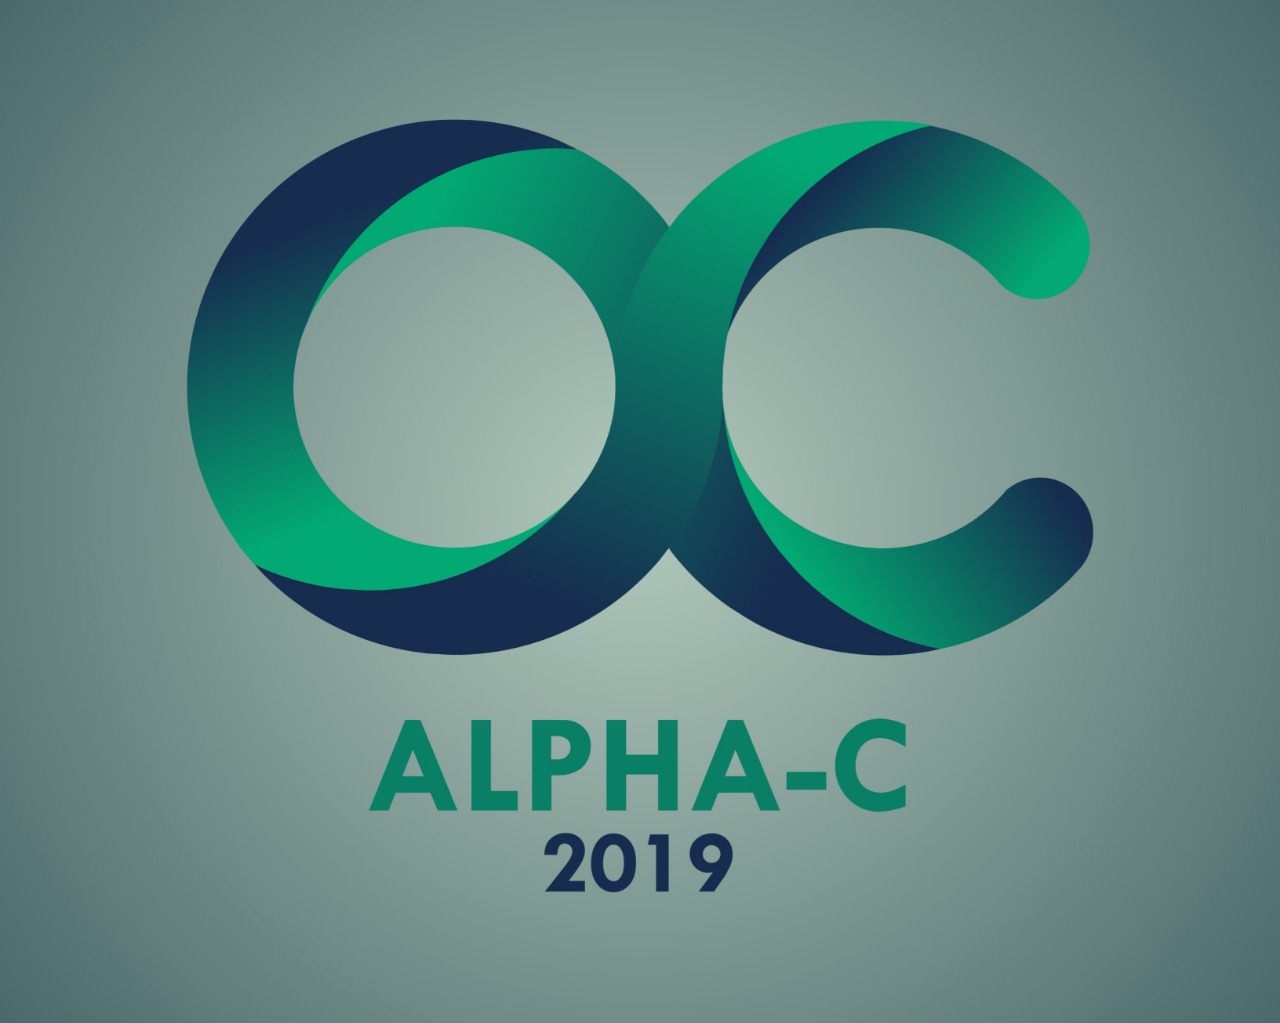 ALPHA-C 2019